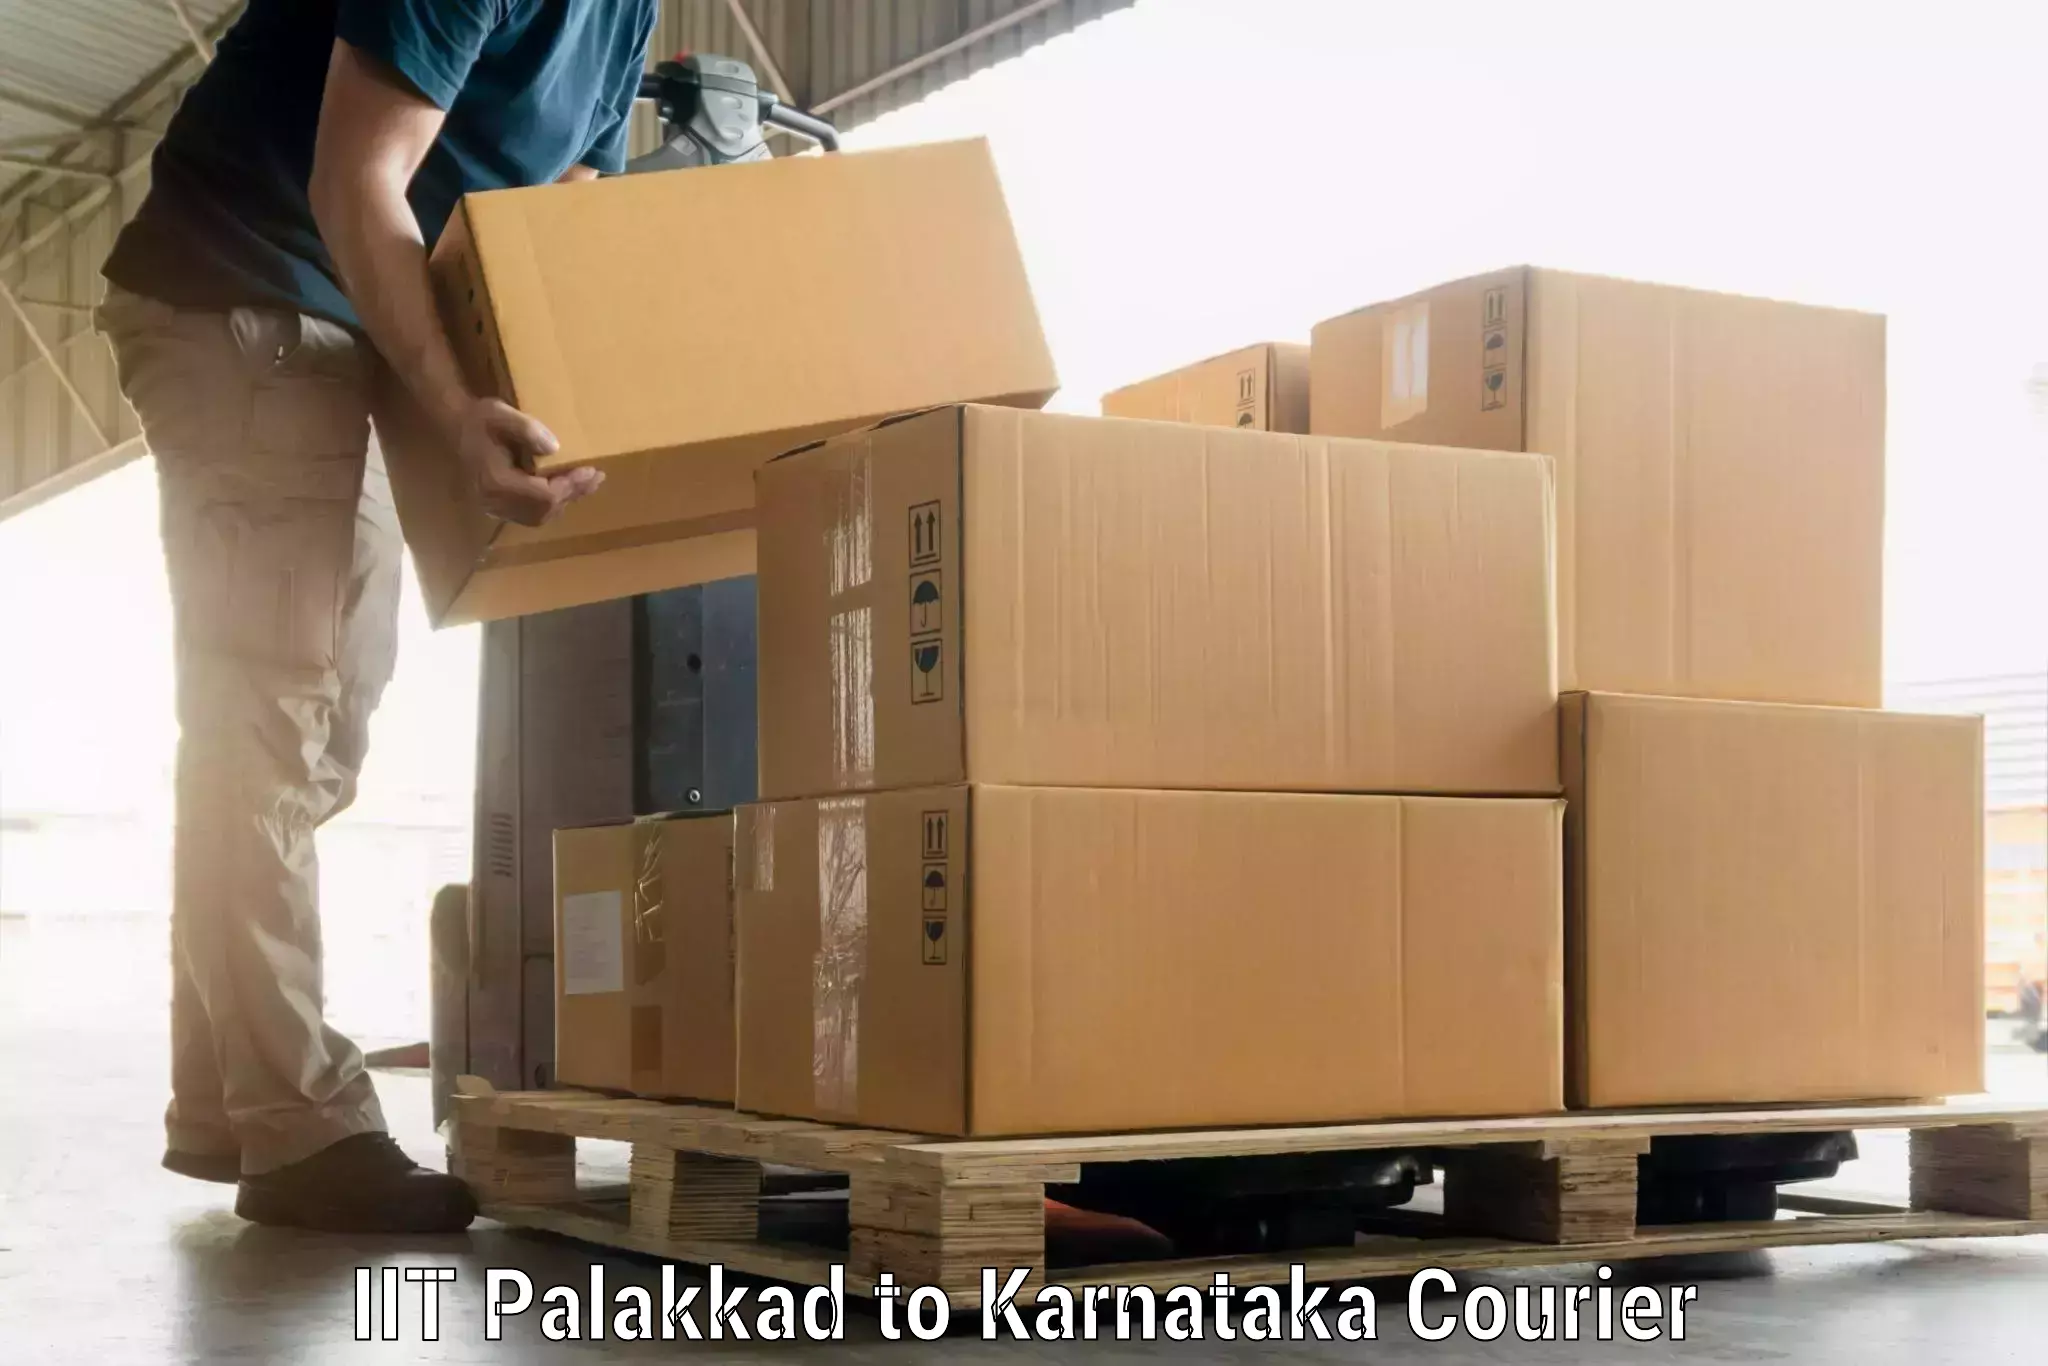 Luggage transit service IIT Palakkad to Kudligi